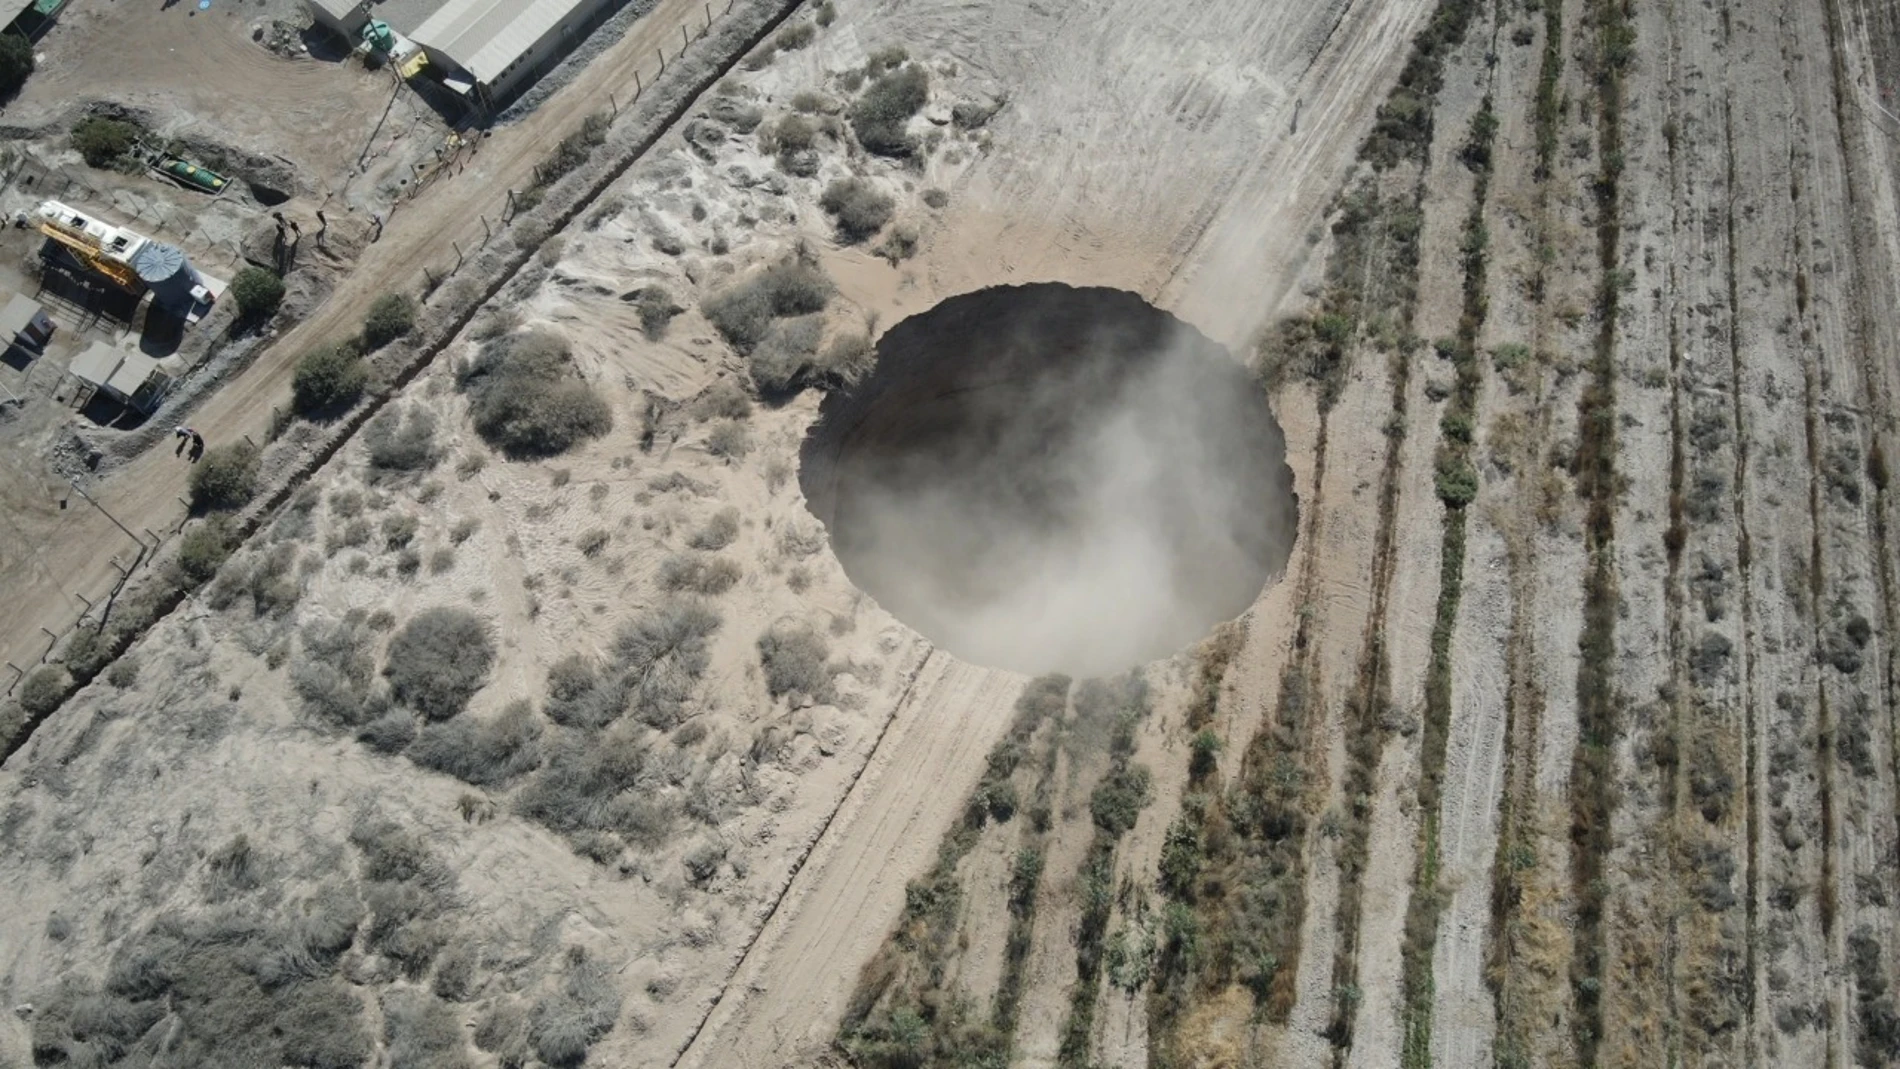 Fotografía aérea cedida por la municipalidad de Tierra Amarilla, situada en el norte de Chile, que muestra el socavón provocado por las labores de La Minera Candelaria en Tierra Amarilla (Chile).